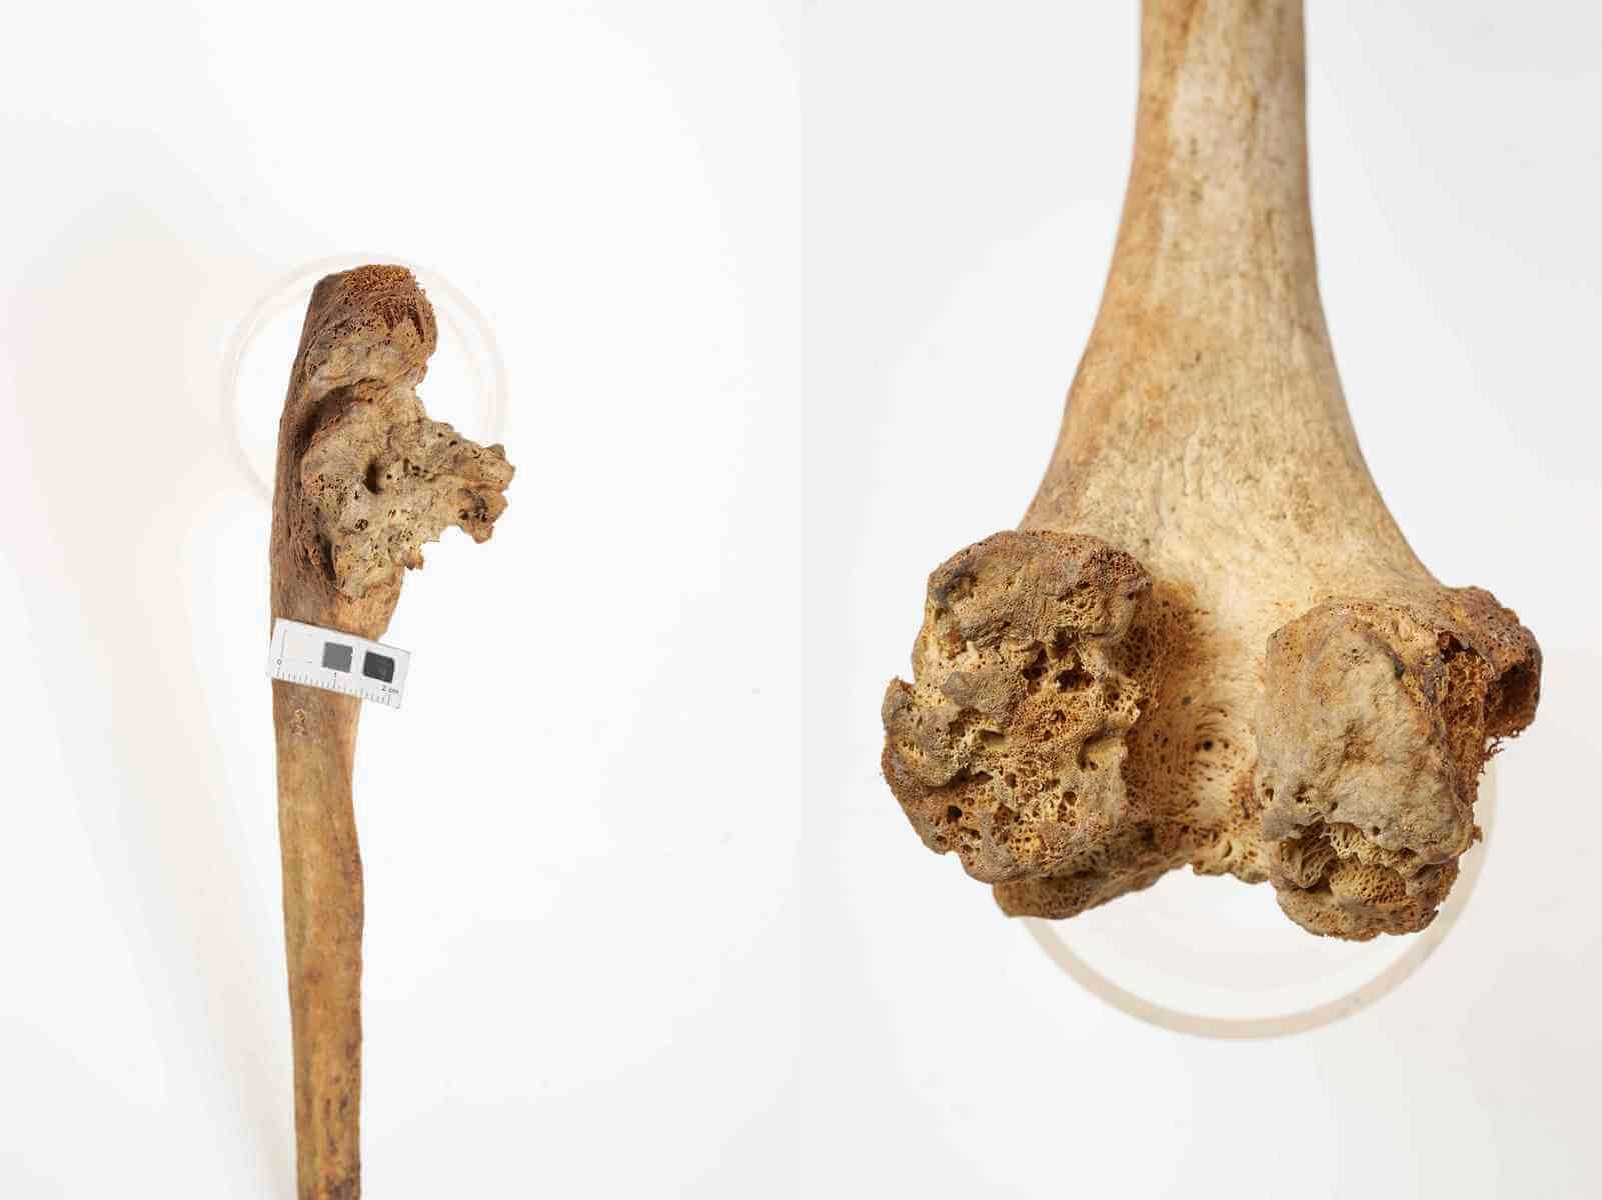 Zniszczenie i silna przebudowa tkanki kostnej w obrębie wyrostków nasady bliższej prawej kości łokciowej, deformacja stawu, osoba dorosła, ossuarium 2046/298/175(4); znaczna destrukcja powierzchni stawowej w obrębie kłykci kości udowej, z dużymi ubytkami w kości podchrzęstnej, osoba dorosła, ossuarium 2006/103/333. Oba przypadki zapalenia kości w połączeniu ze zmianami zwyrodnieniowymi, gruźlica kostno-stawowa(?).